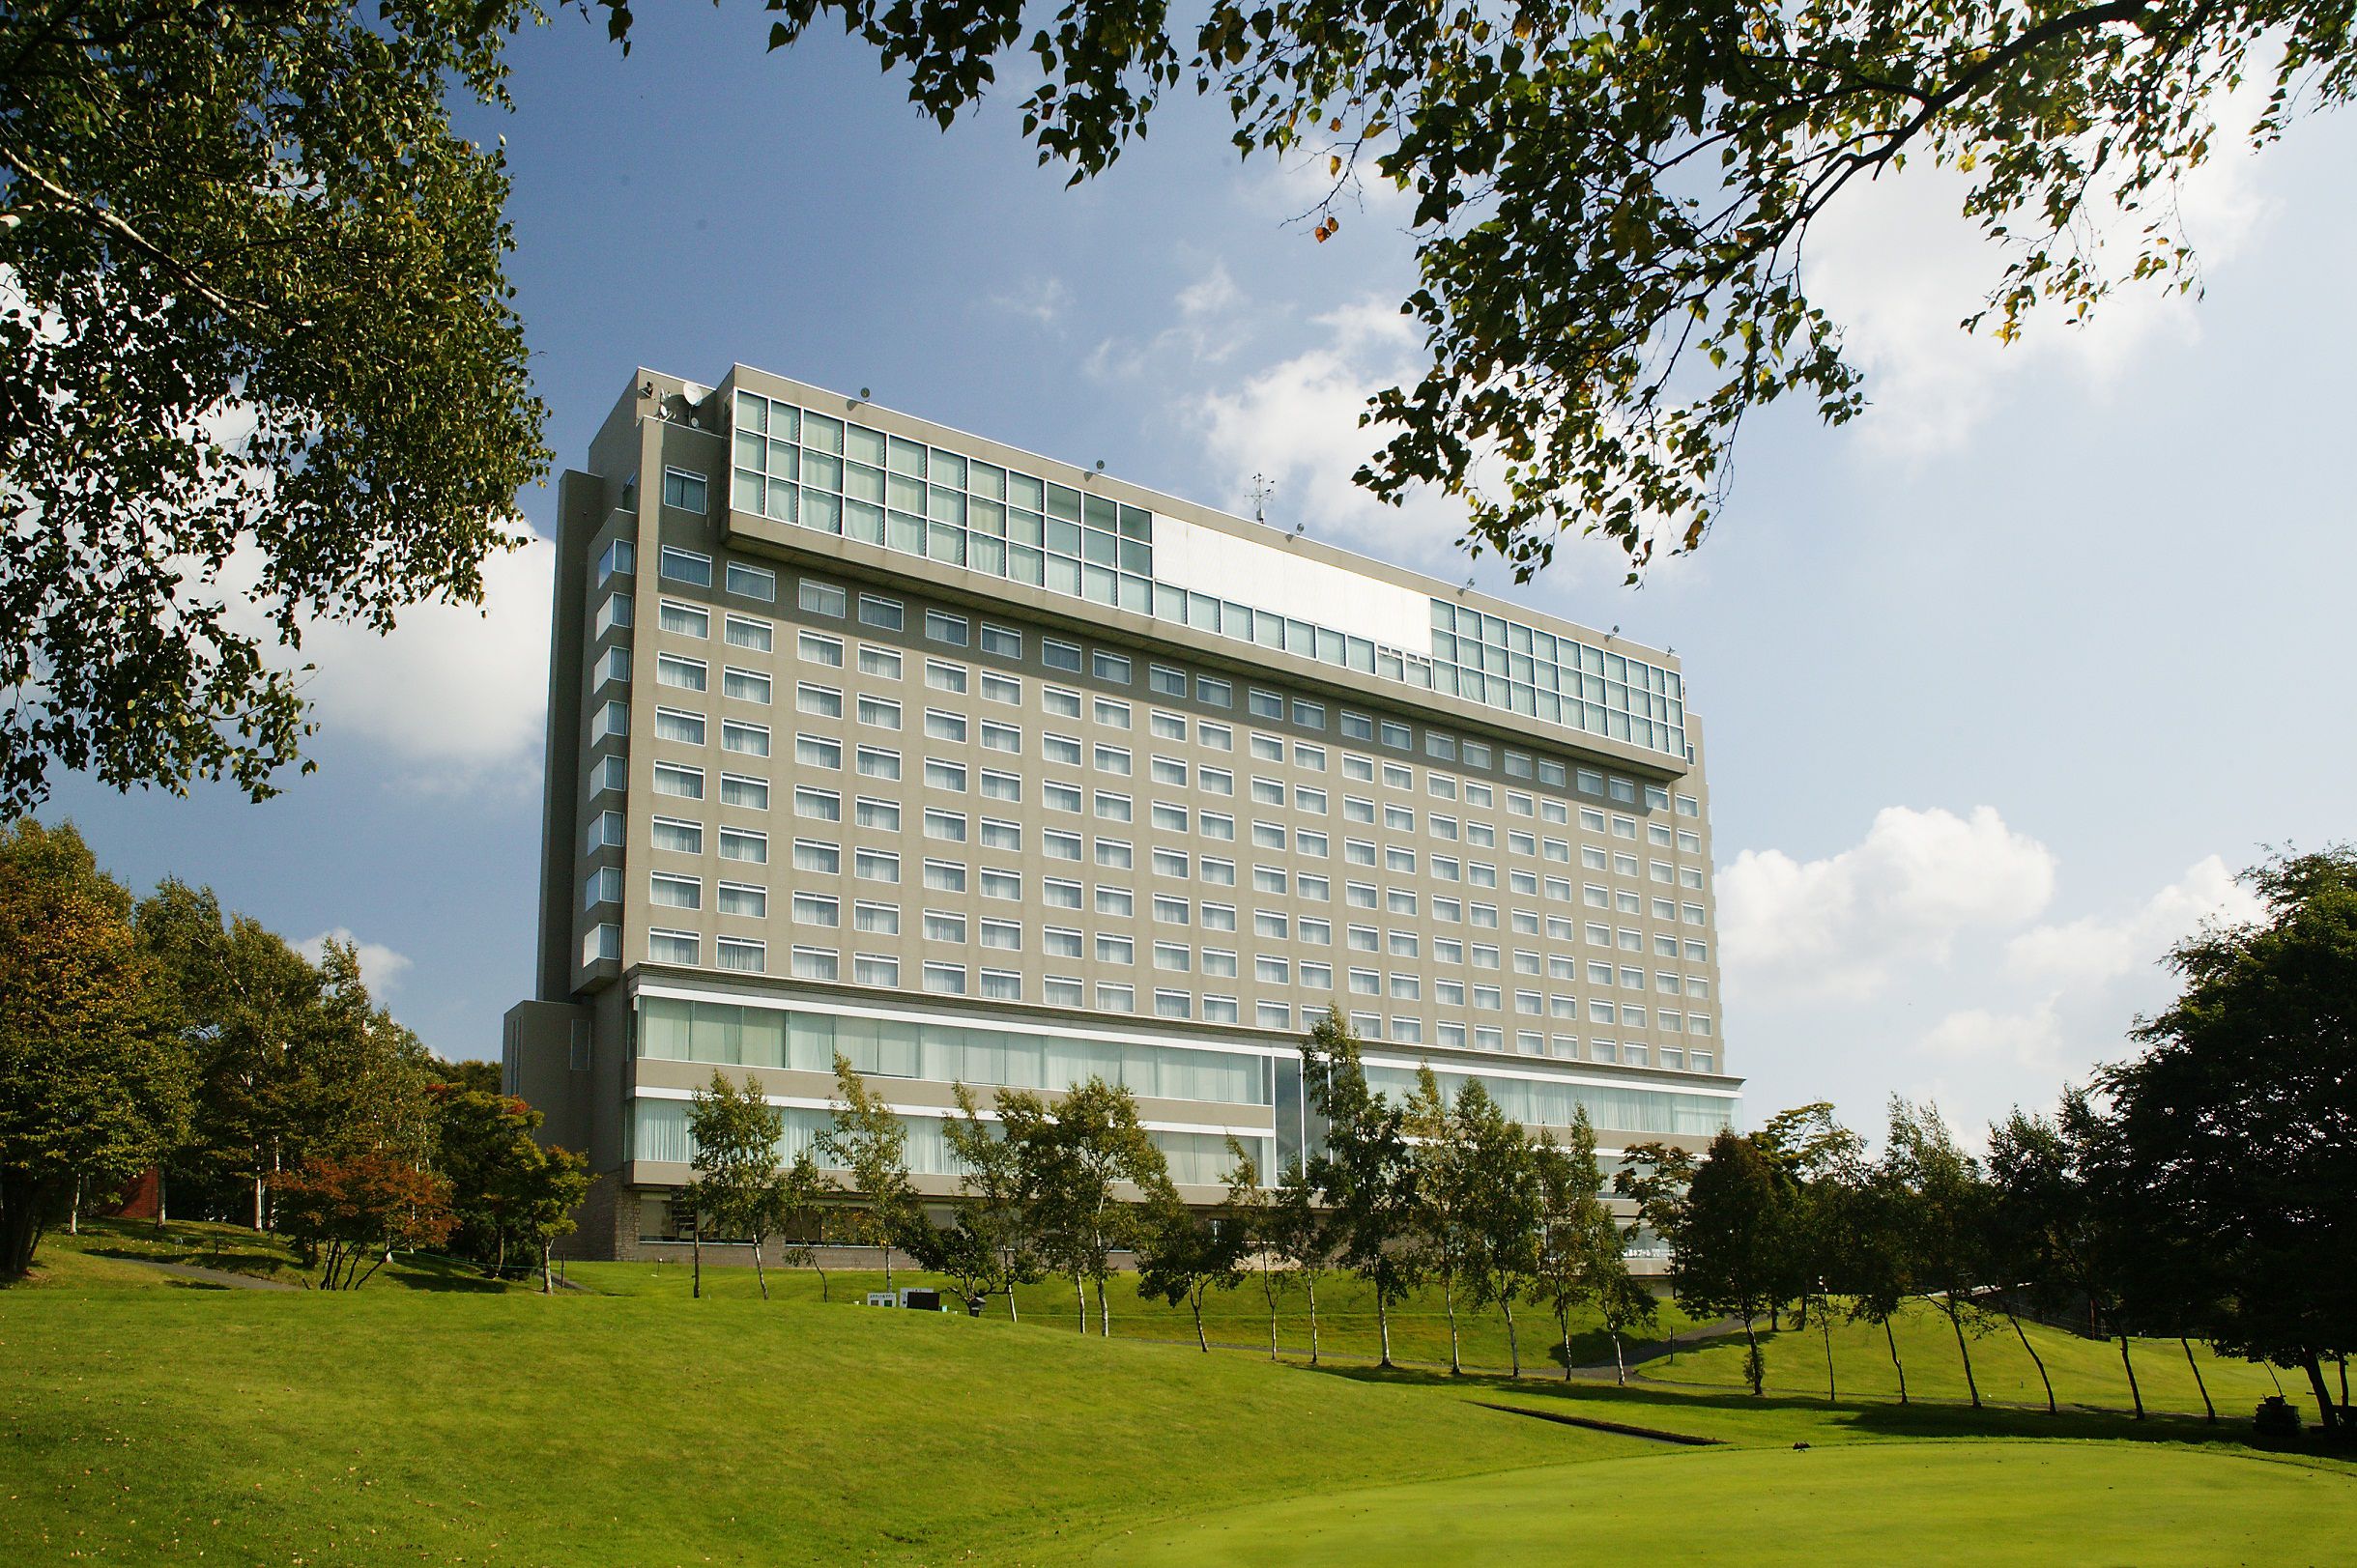 天然温泉・エステ・プール・ フィットネスジム・テニスコート等を備えたアーバン型リゾートホテルです。